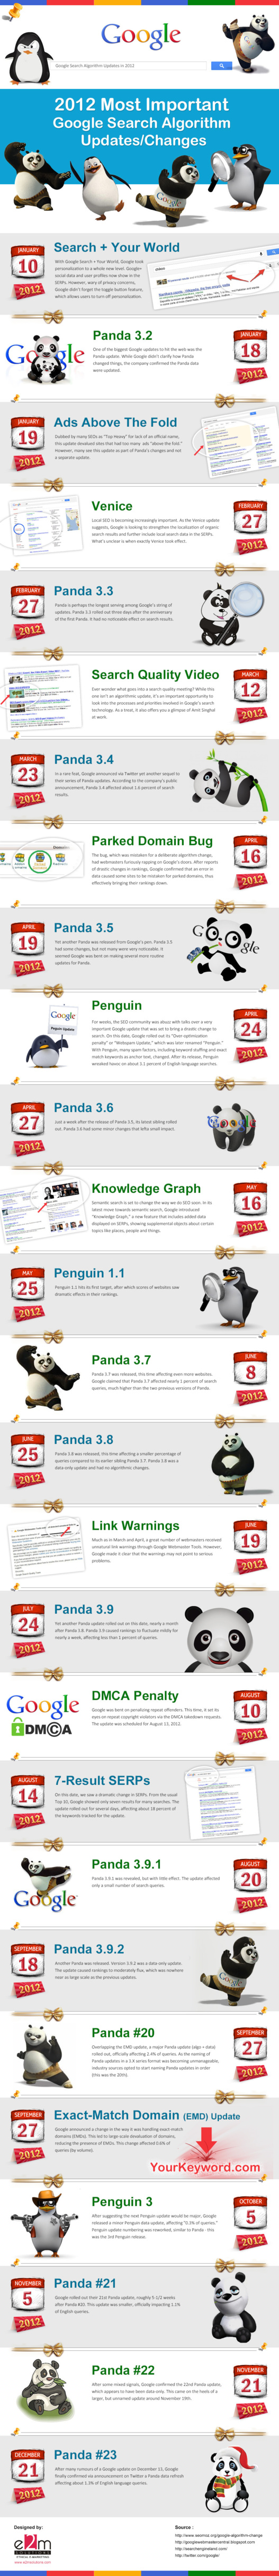 Les 27 plus importantes mises à jour de Google en 2012 et en 1 image